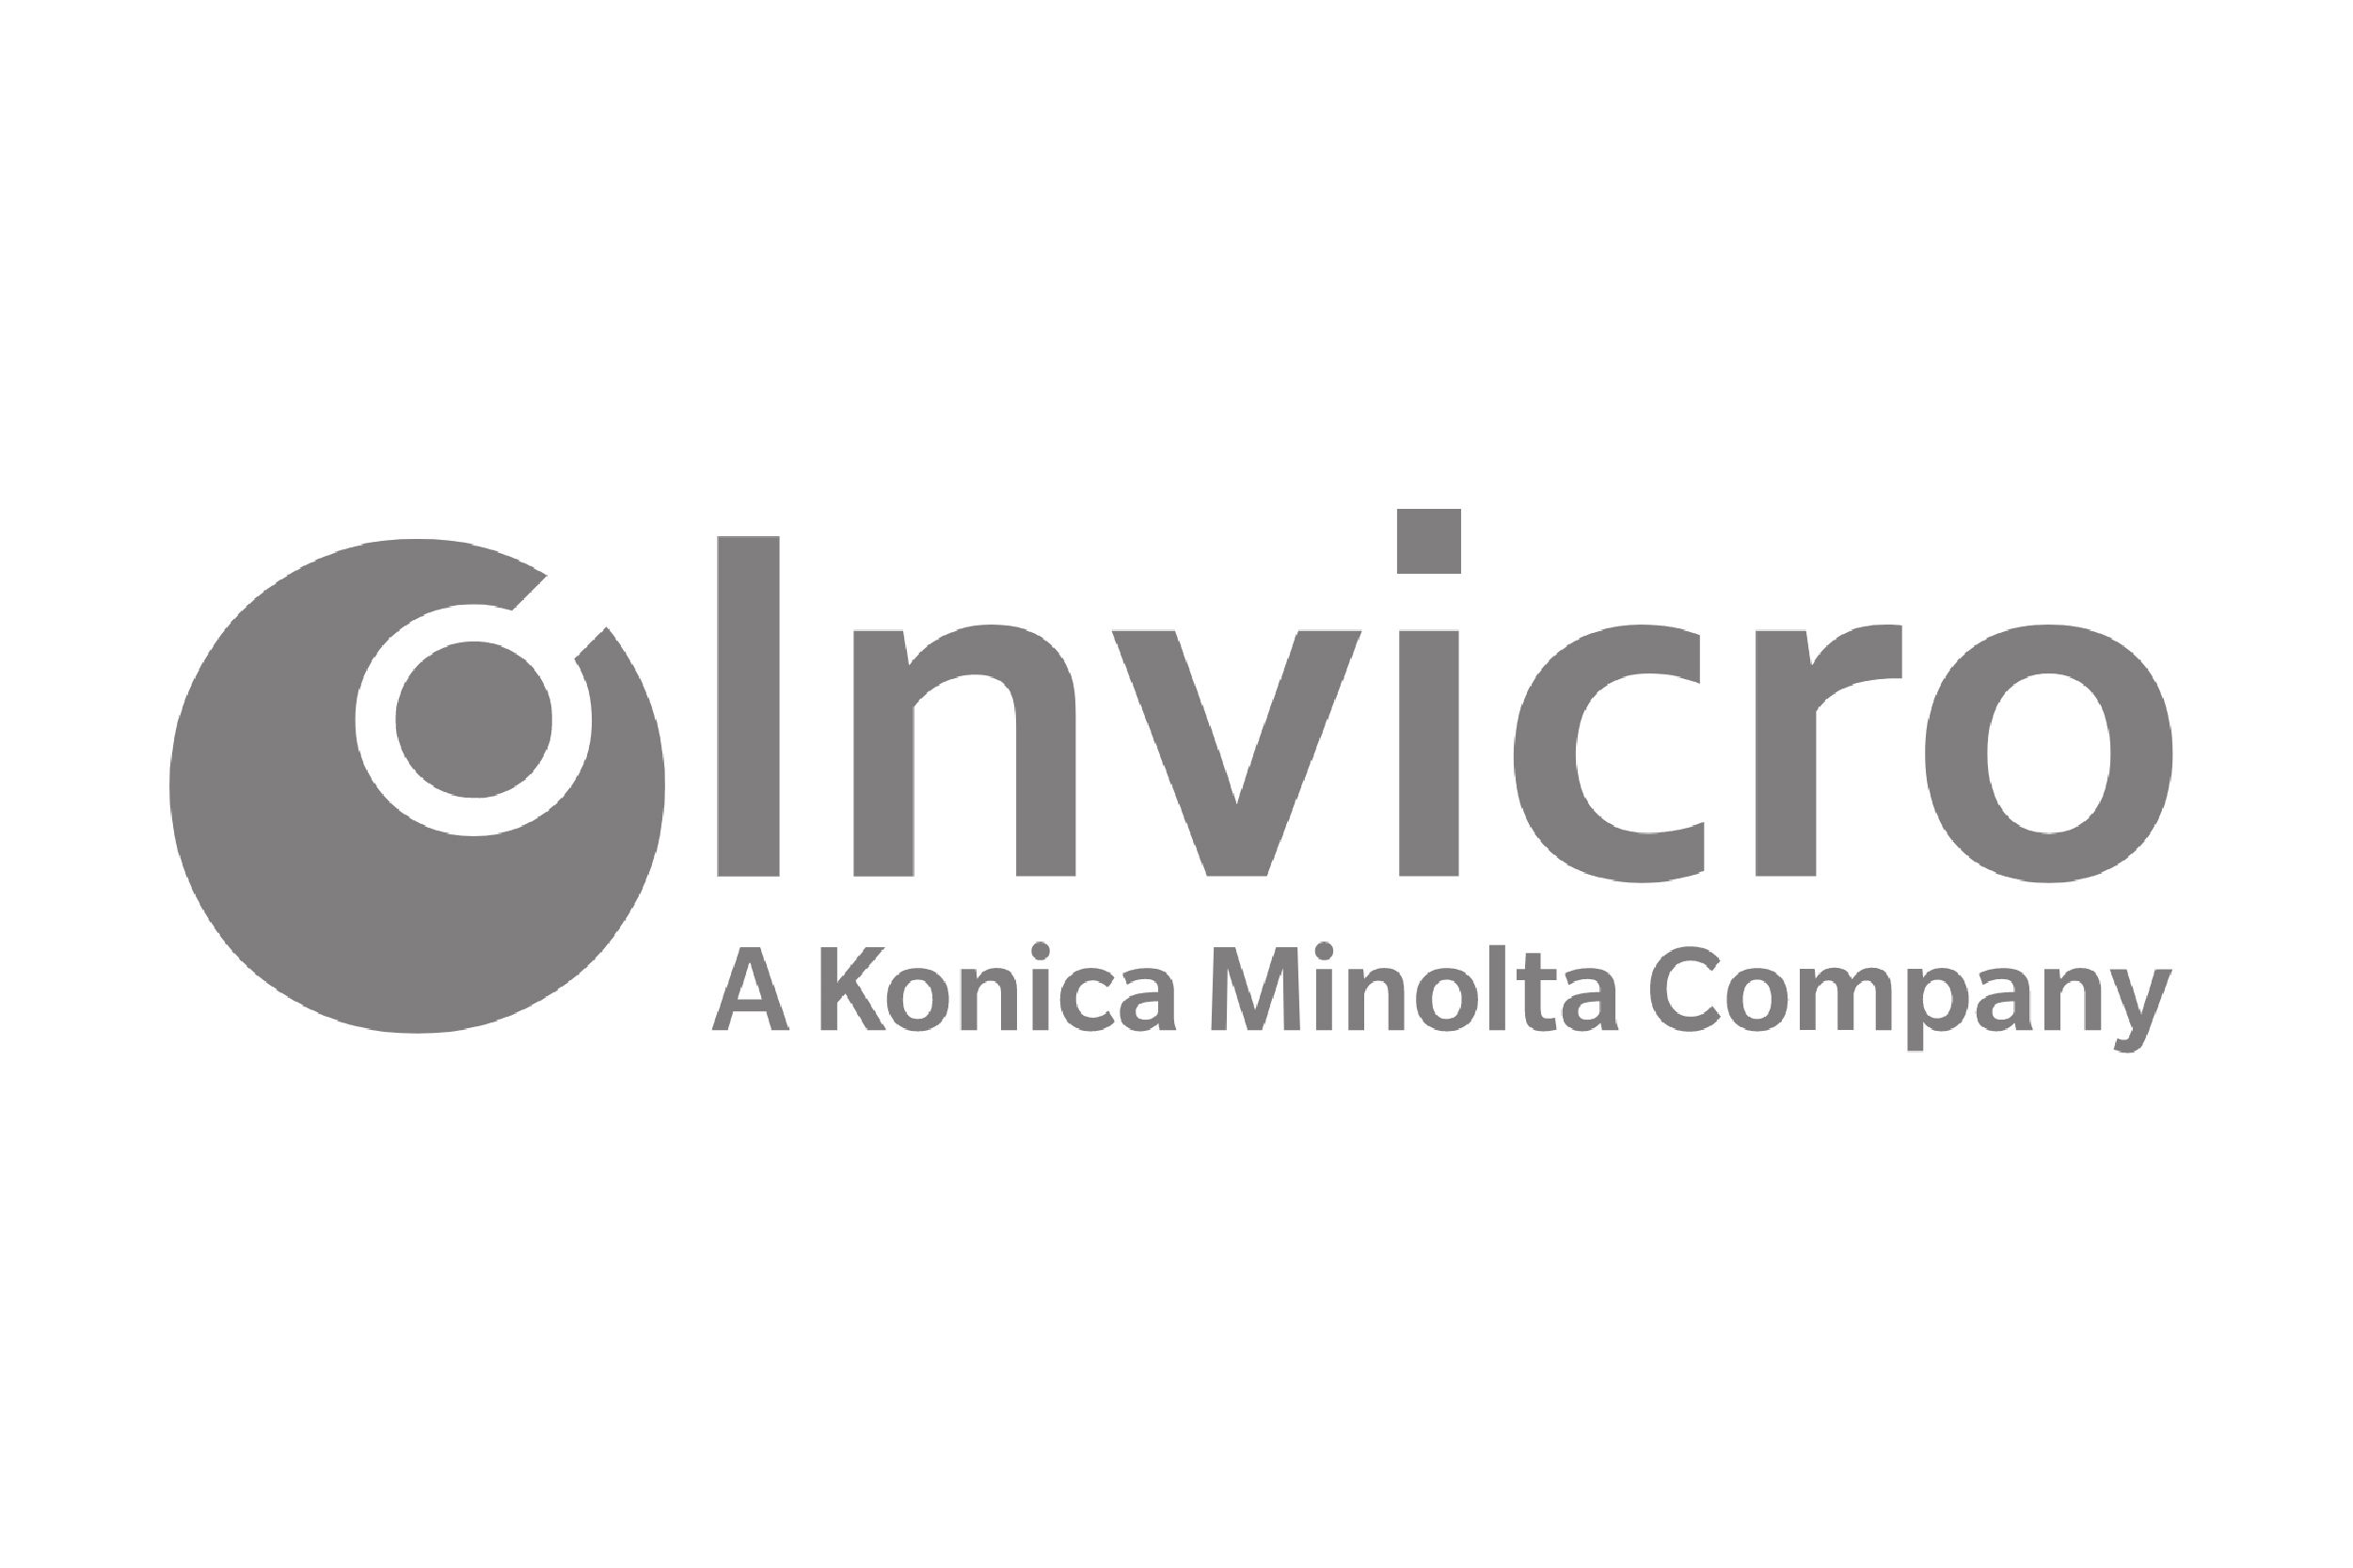 Invicro-1